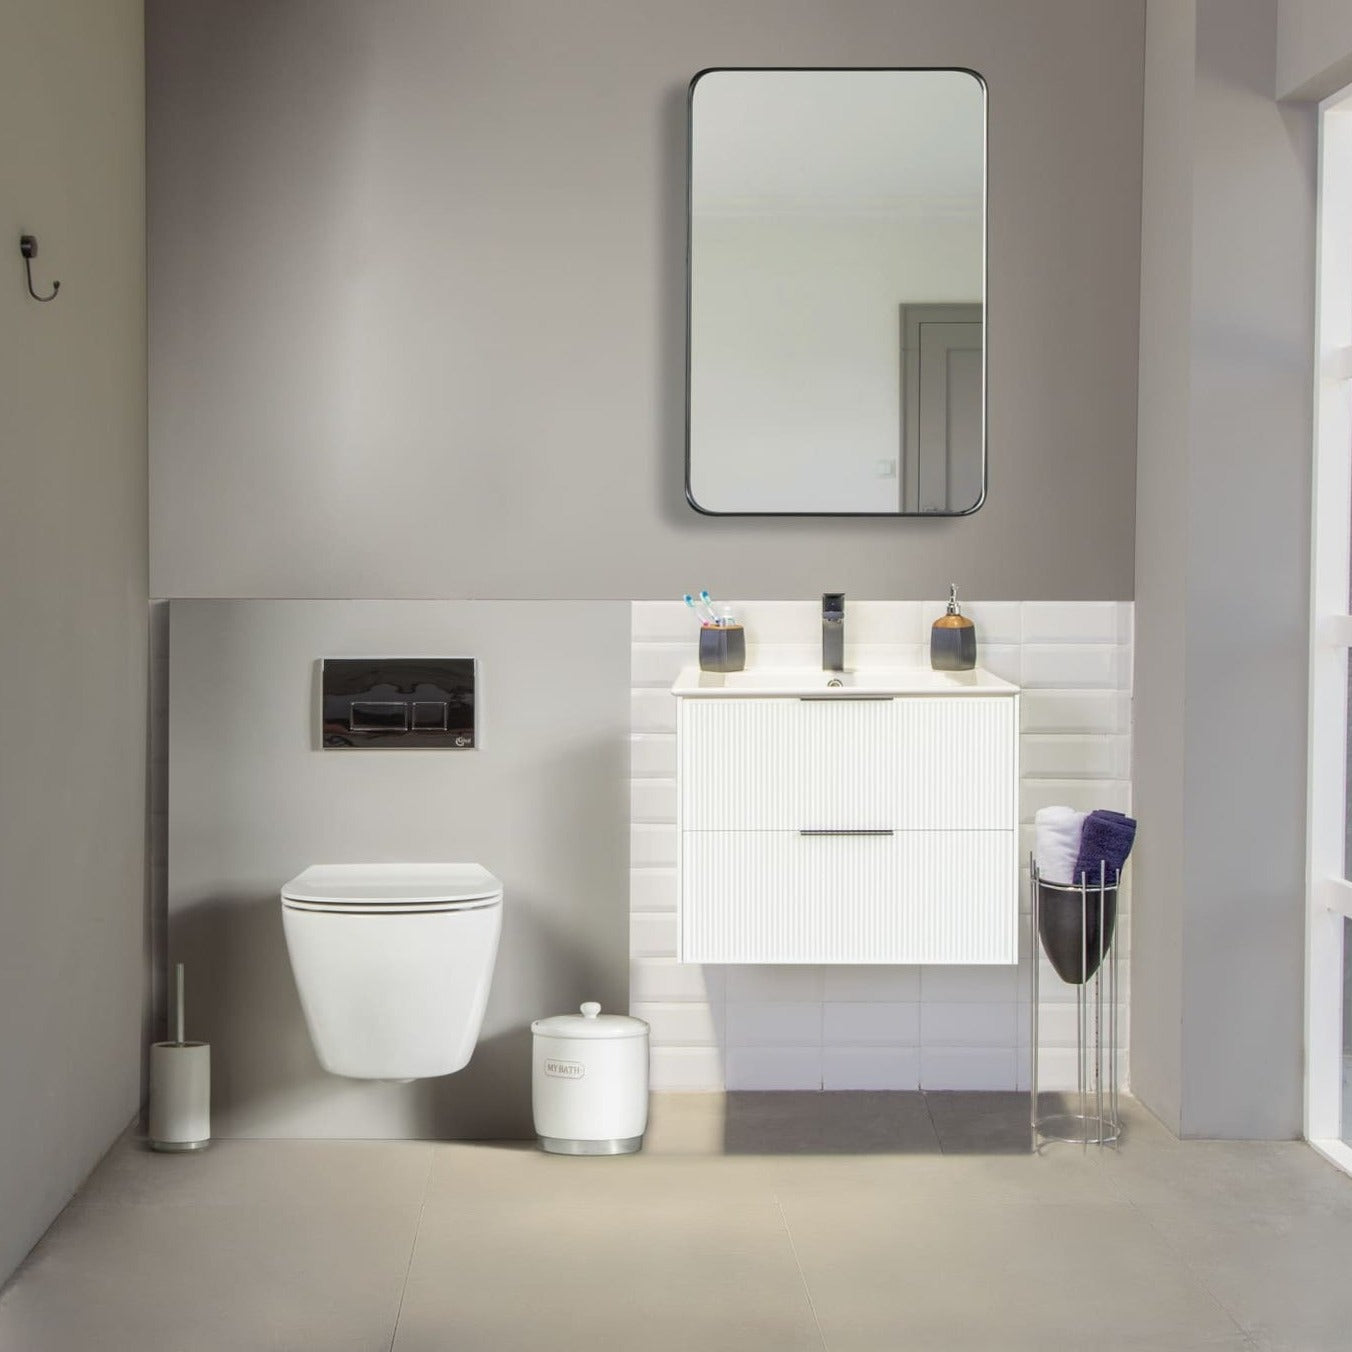 Sorrento Bathroom Vanity Homelero 24" #size_24" #color_white #hardware_black